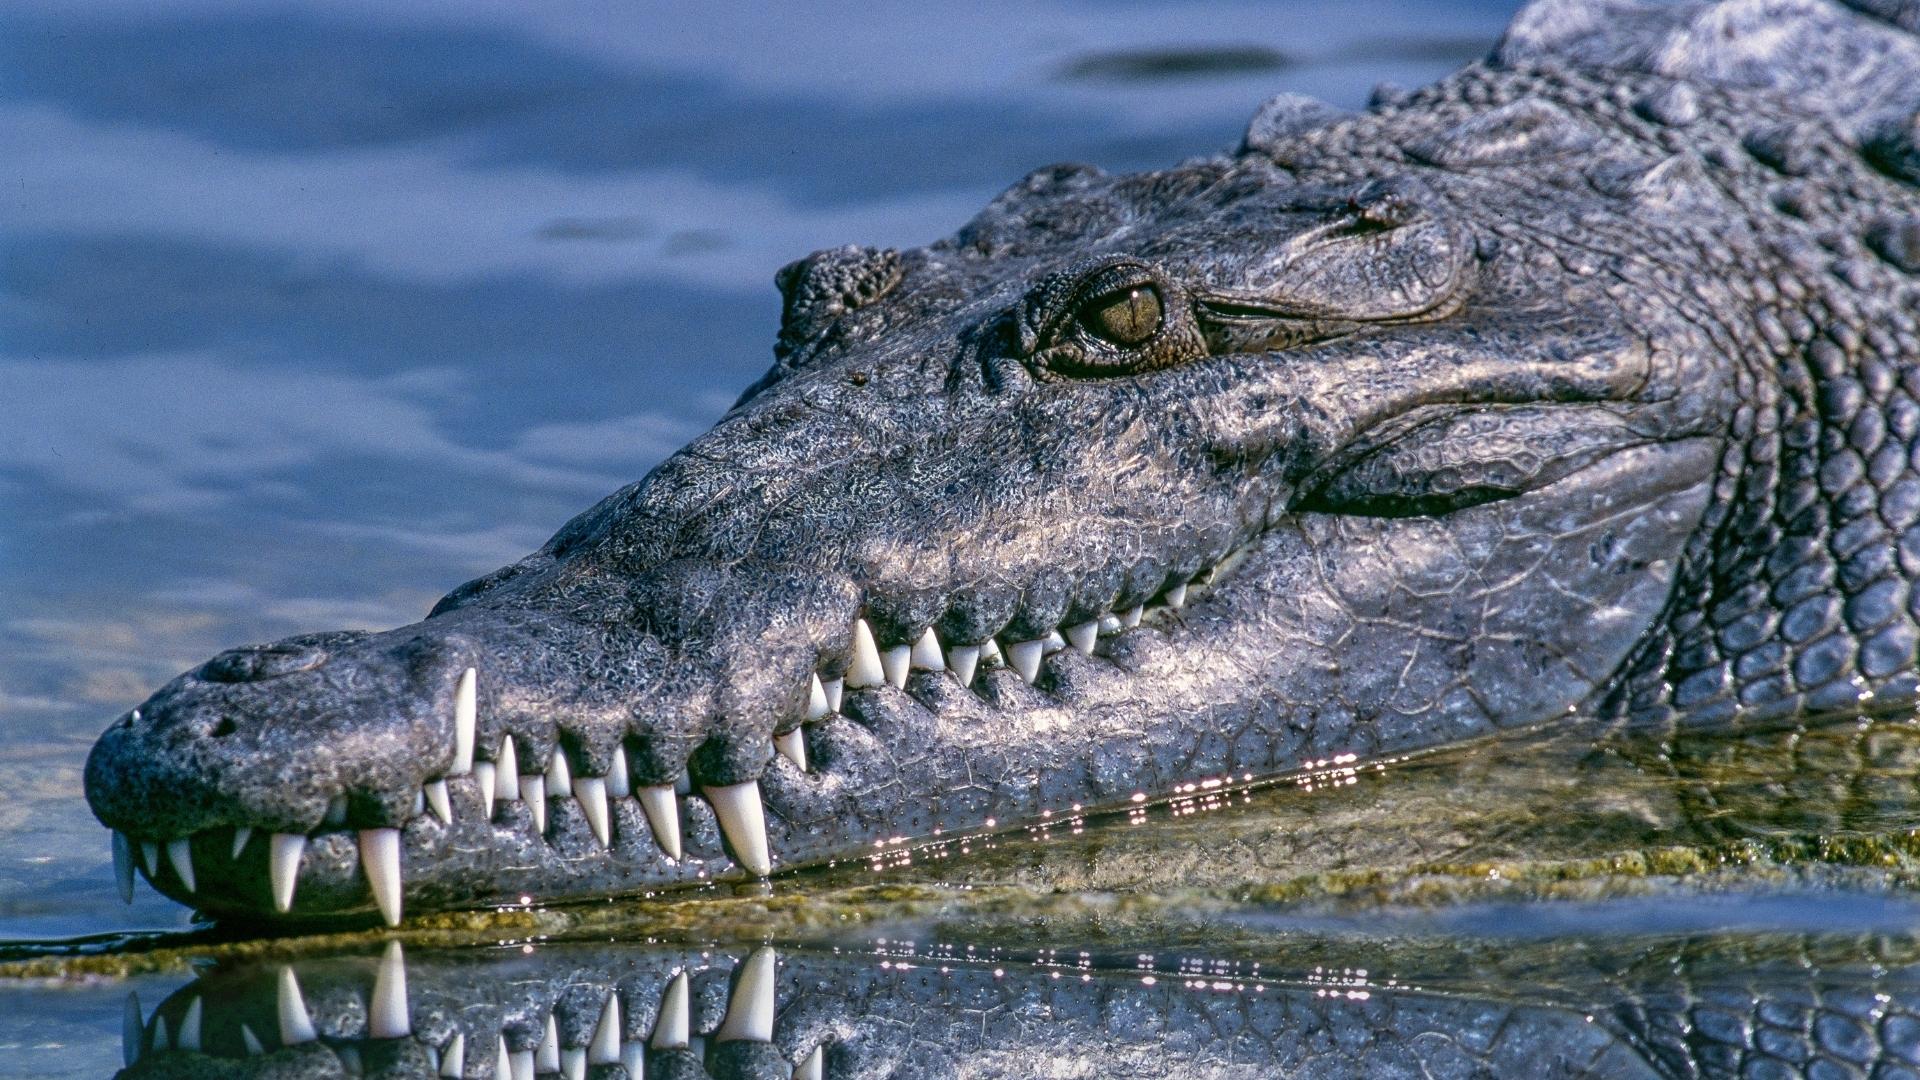 Alligator in Nature